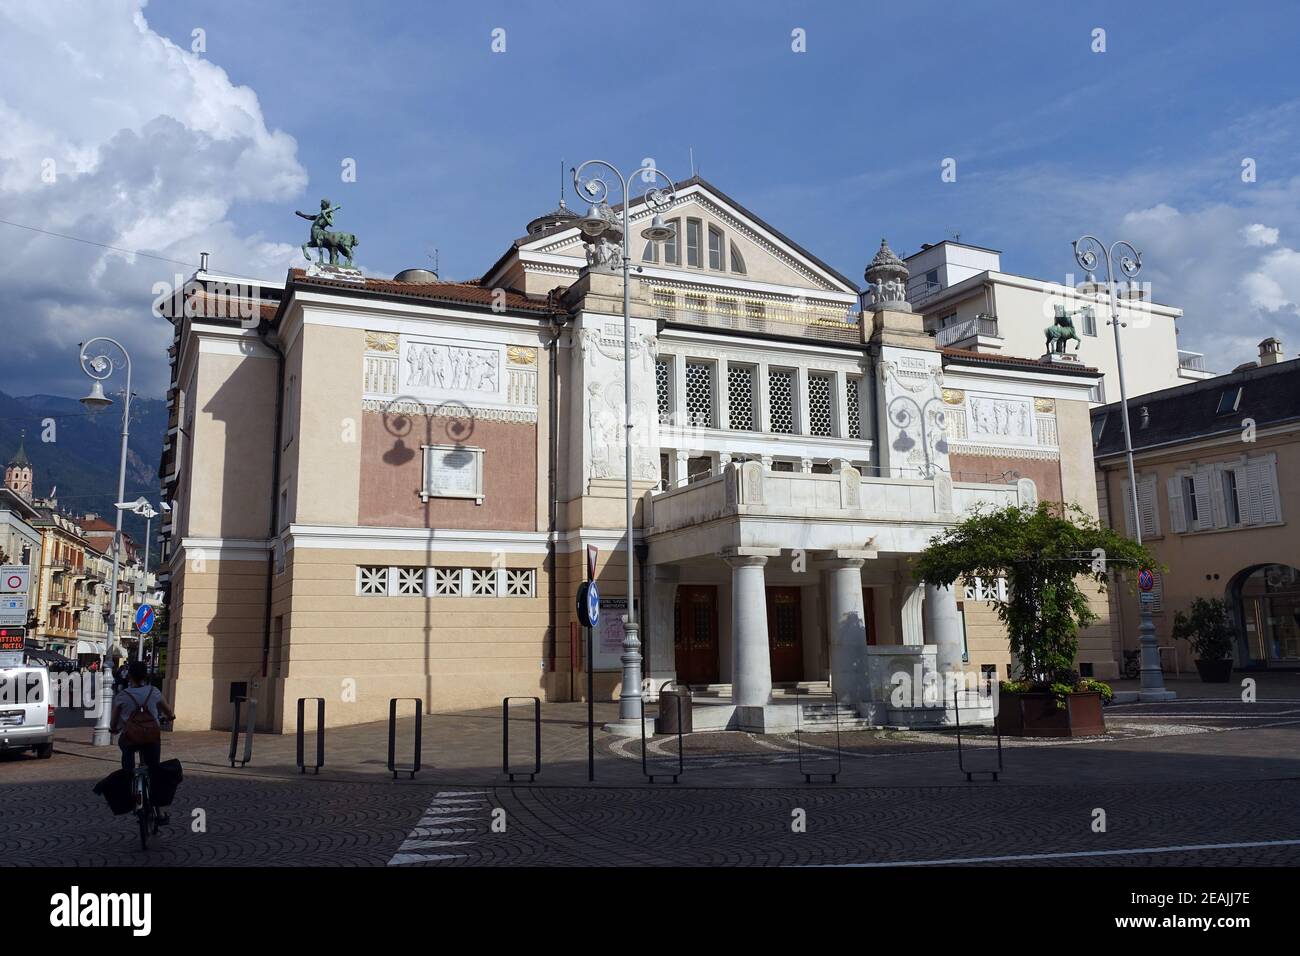 théâtre municipal classé dans le style art nouveau Banque D'Images